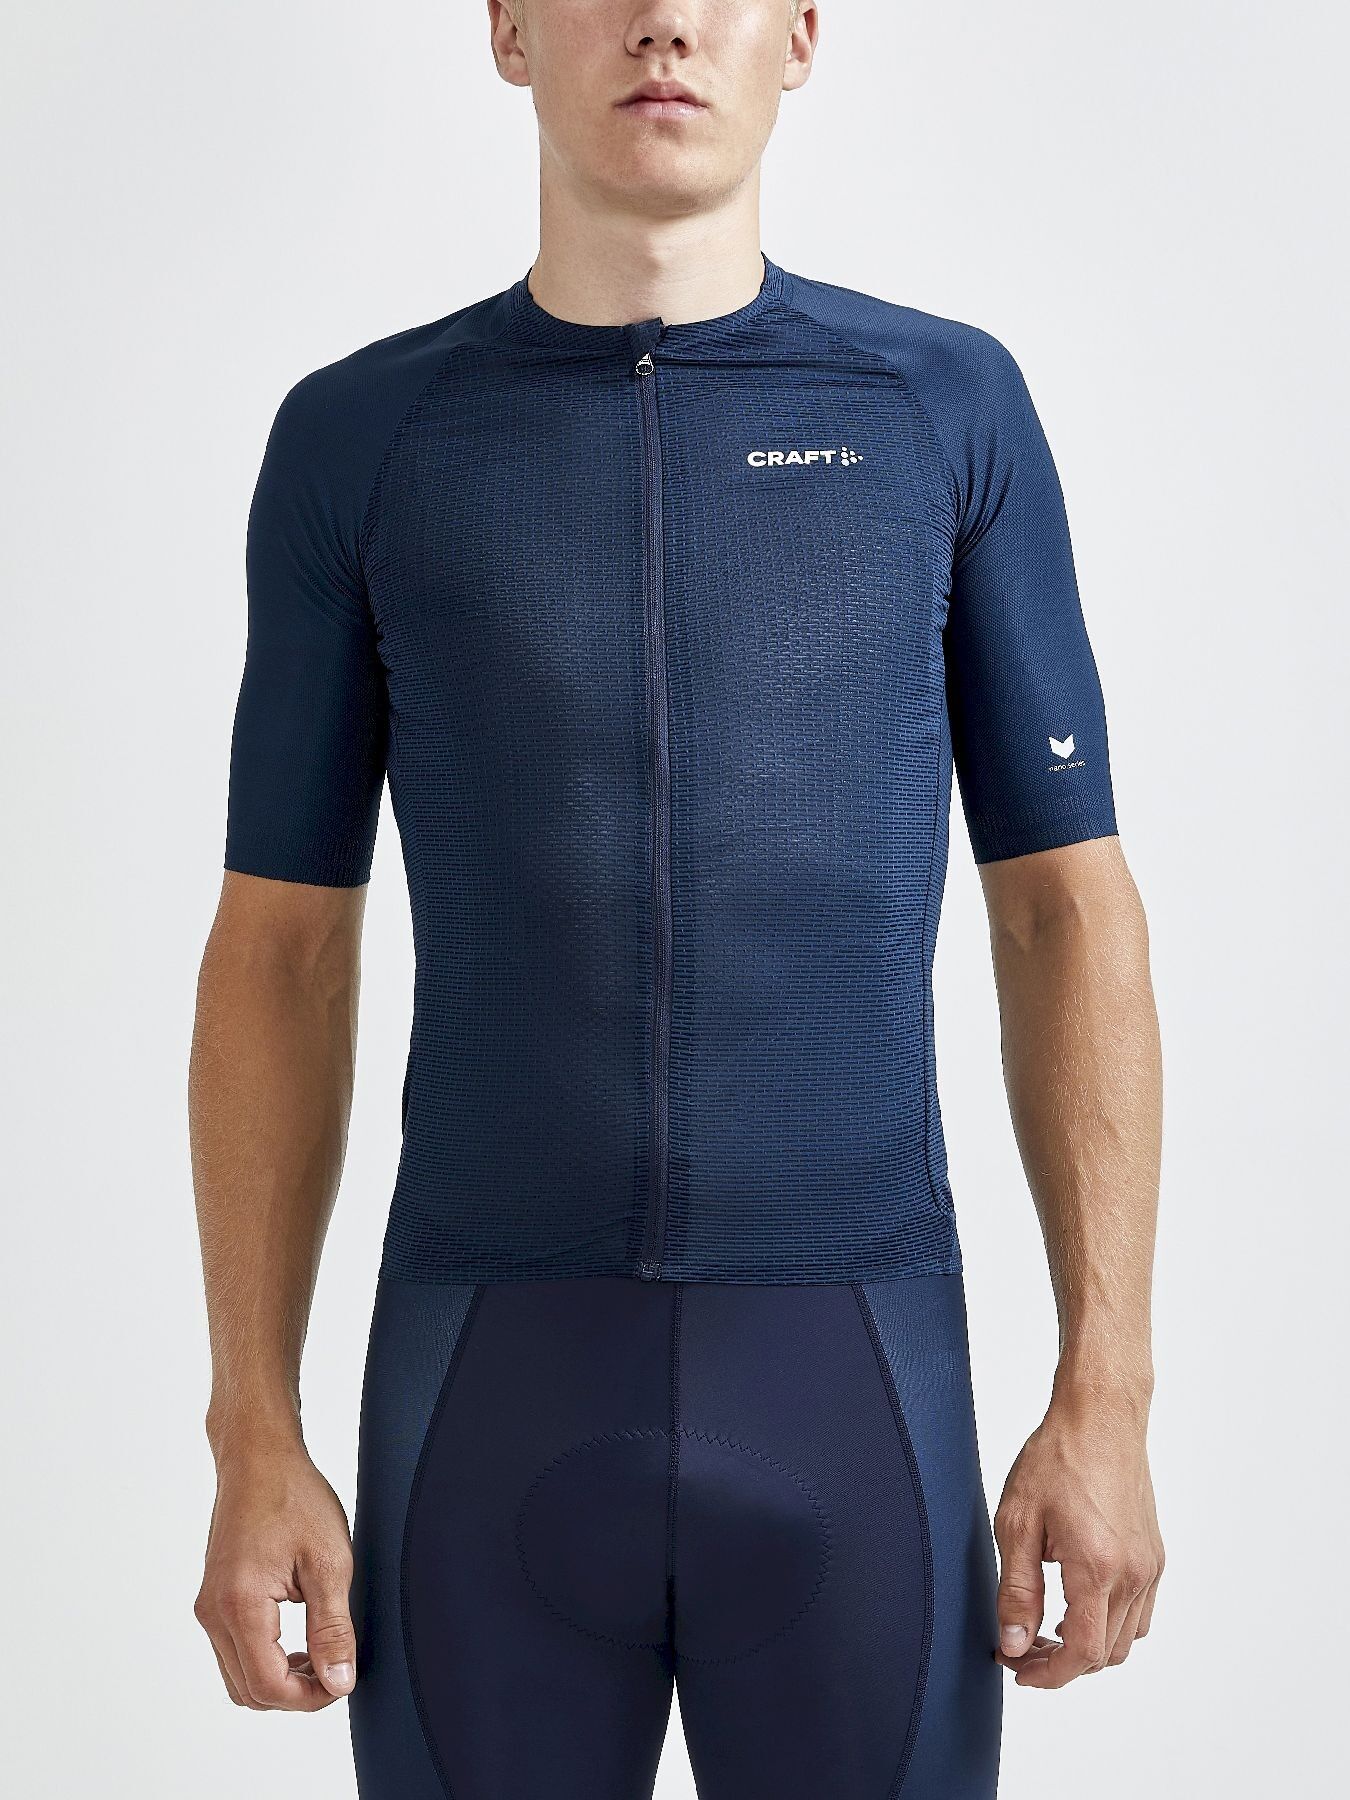 Craft Pro Nano Jersey - Cycling jersey - Men's